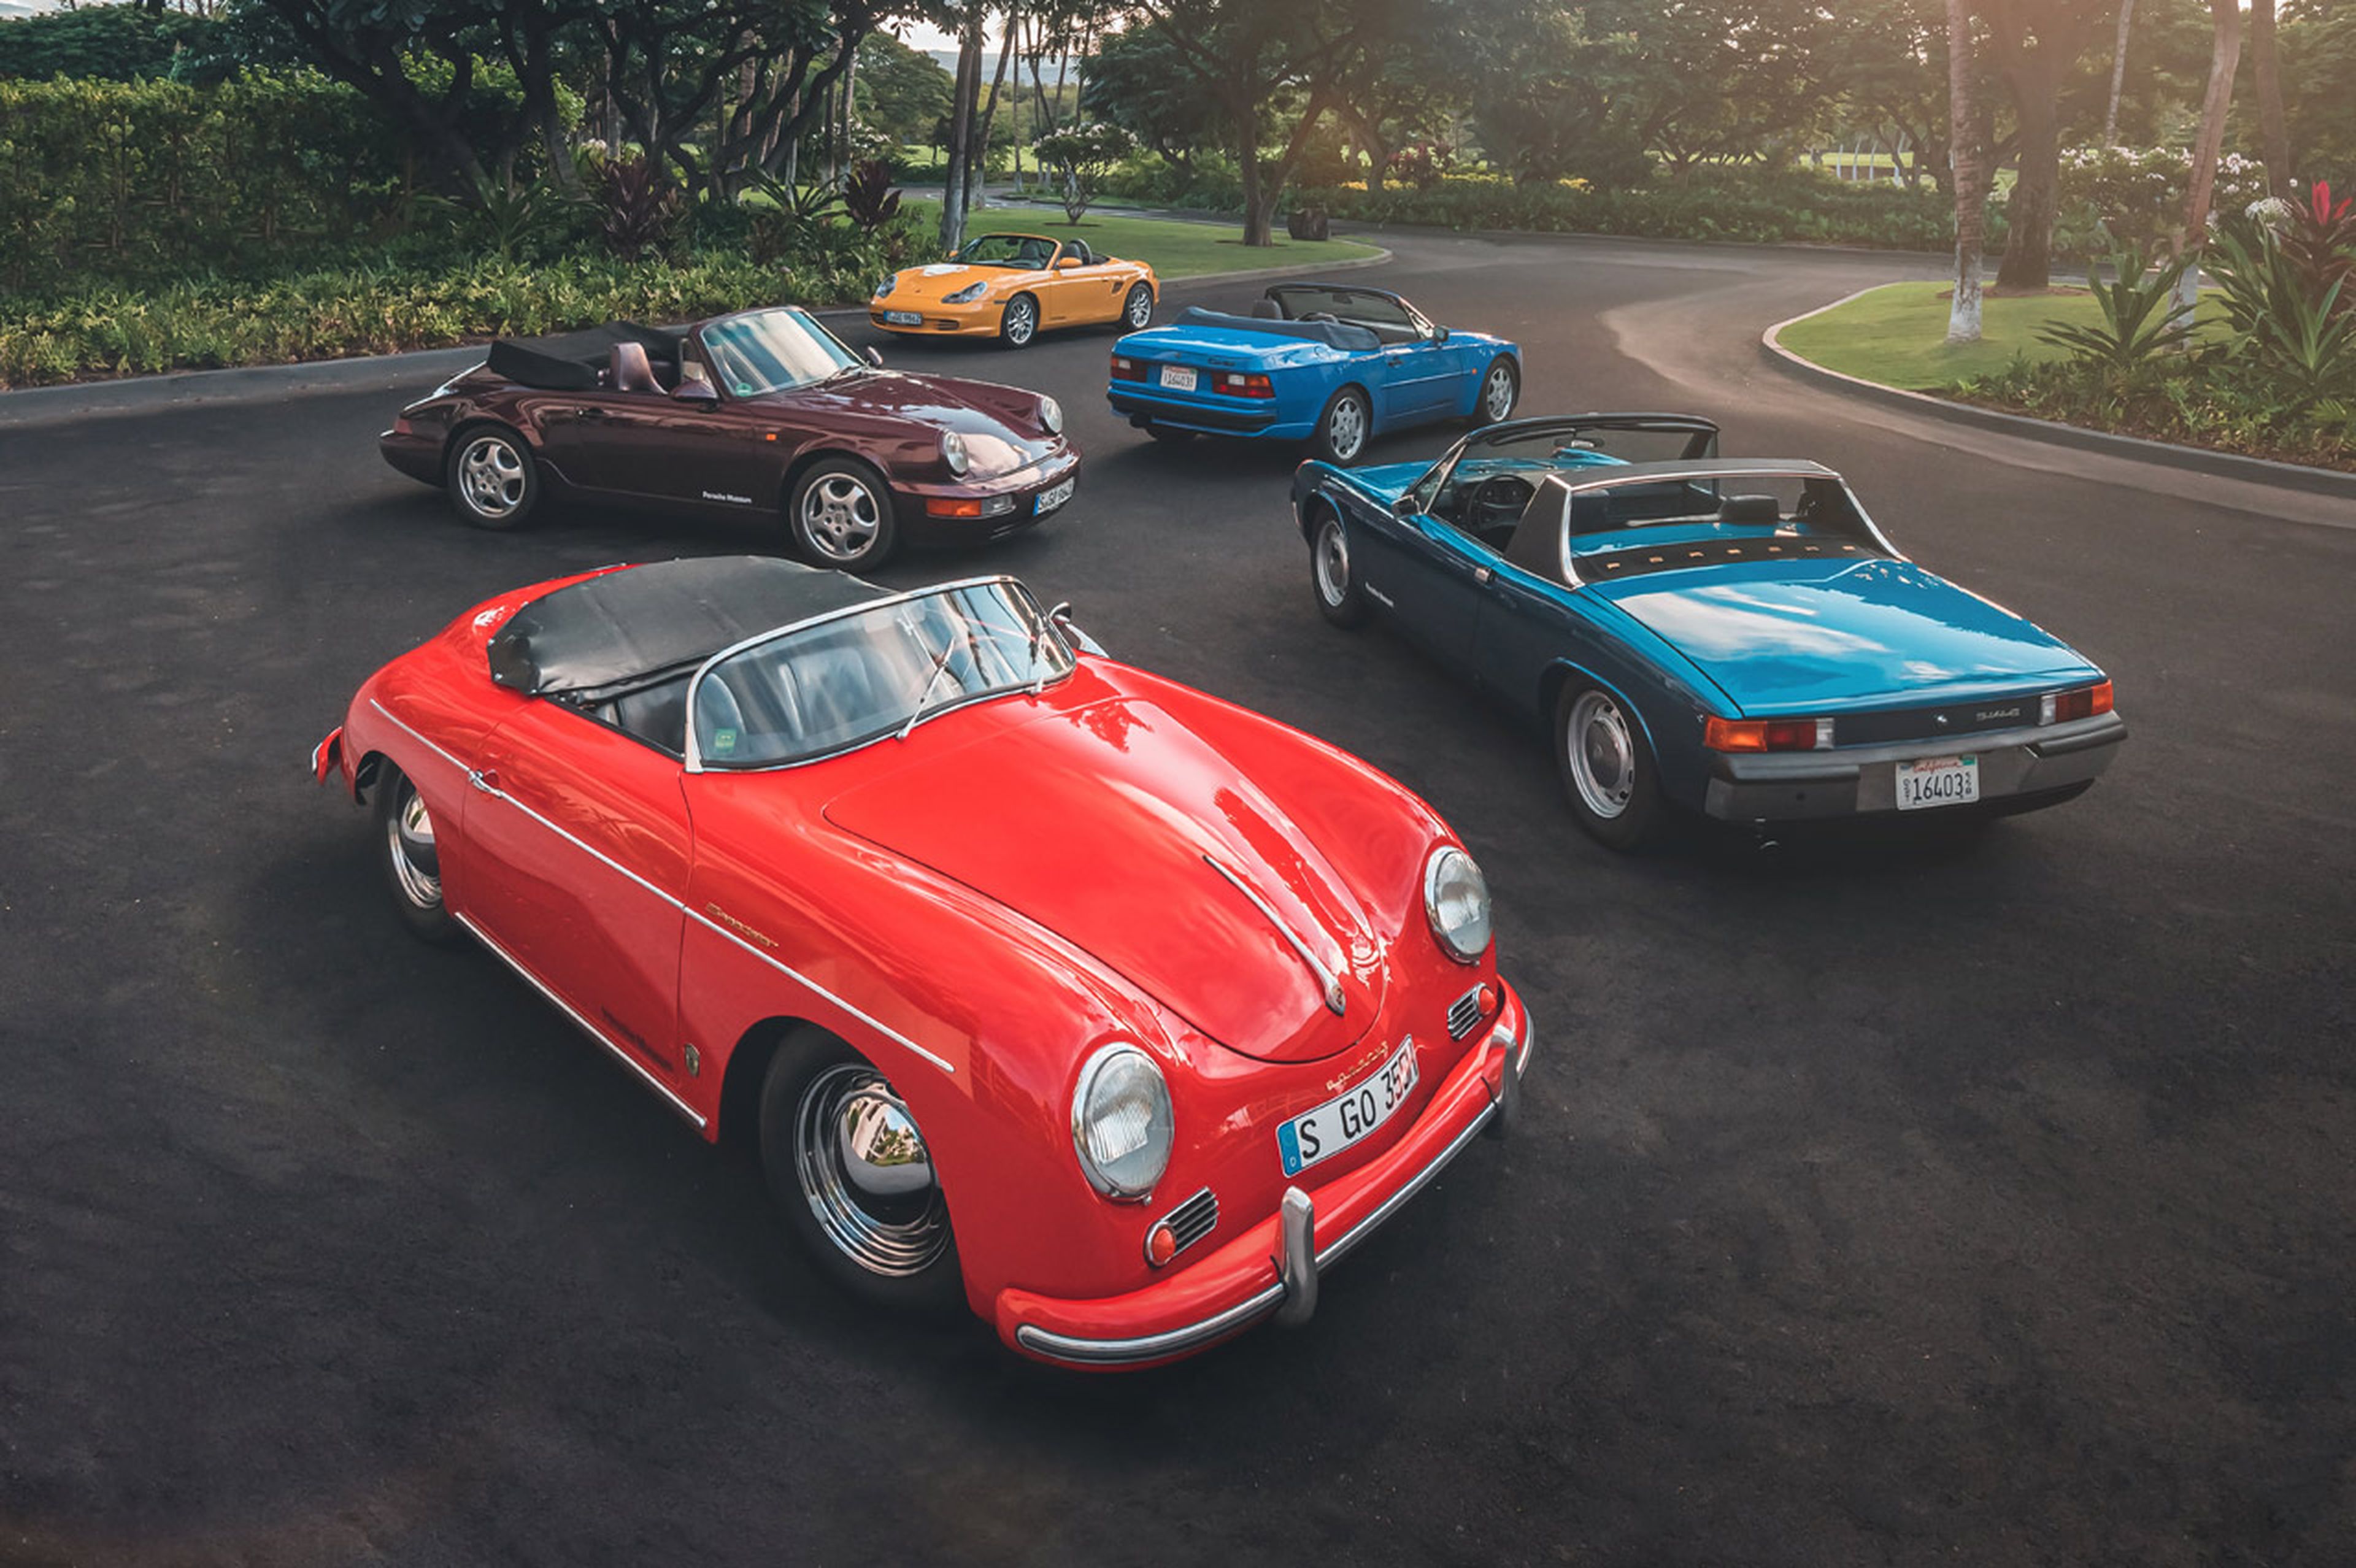 Probamos 5 Porsche descapotables de 5 generaciones diferentes en Hawái